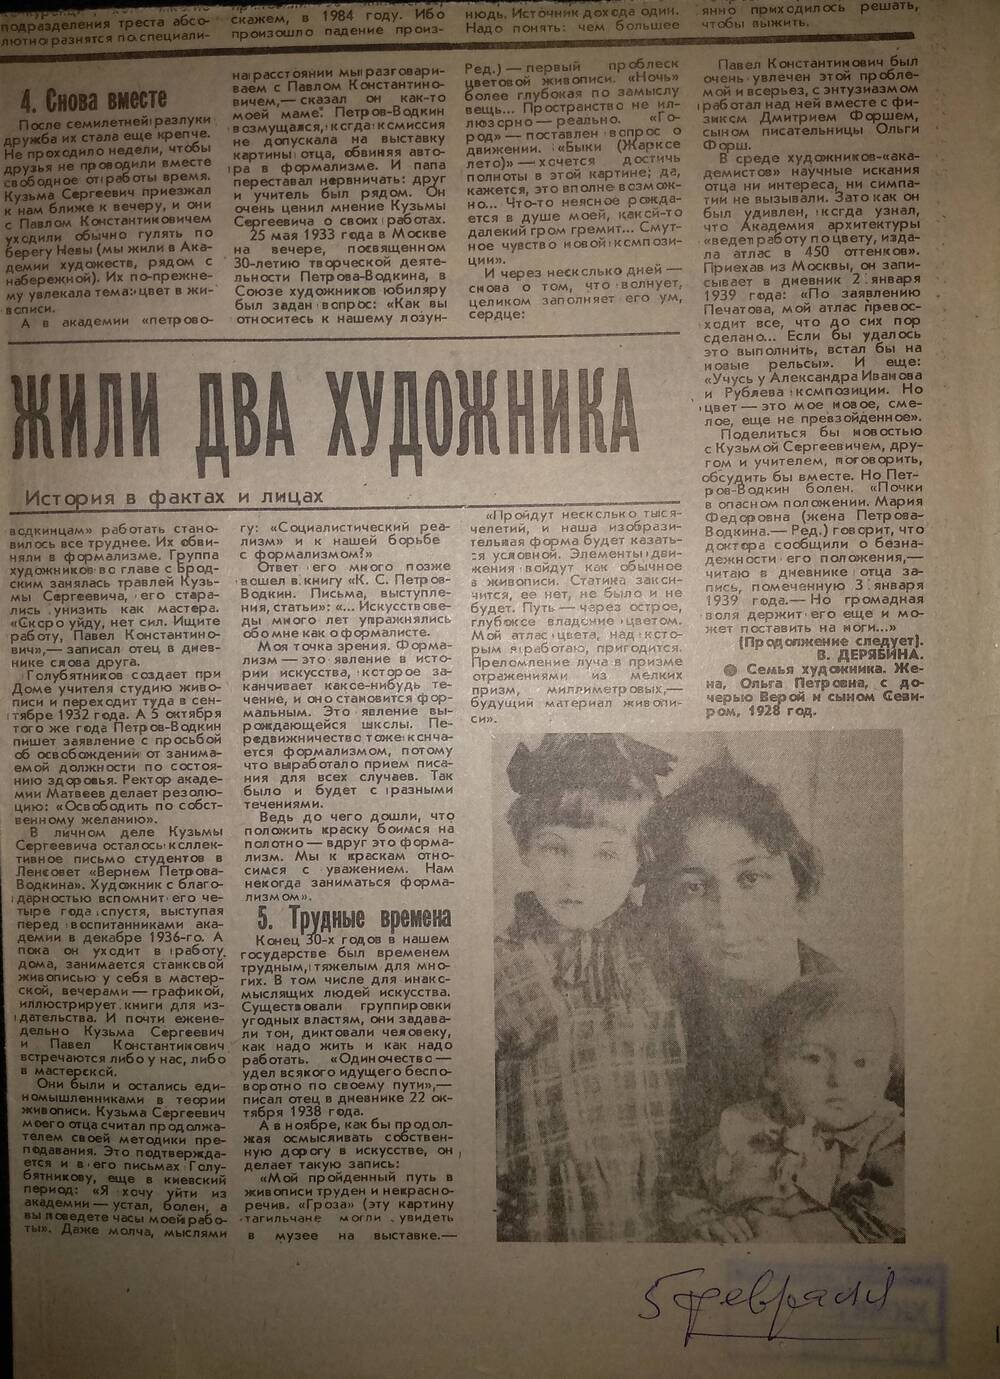 Вырезка из газеты «Тагильский рабочий» от 5 февраля 1993 г. со статьёй «Жили два художника» о художниках П.К. Голубятникове и К.С. Петрове-Водкине